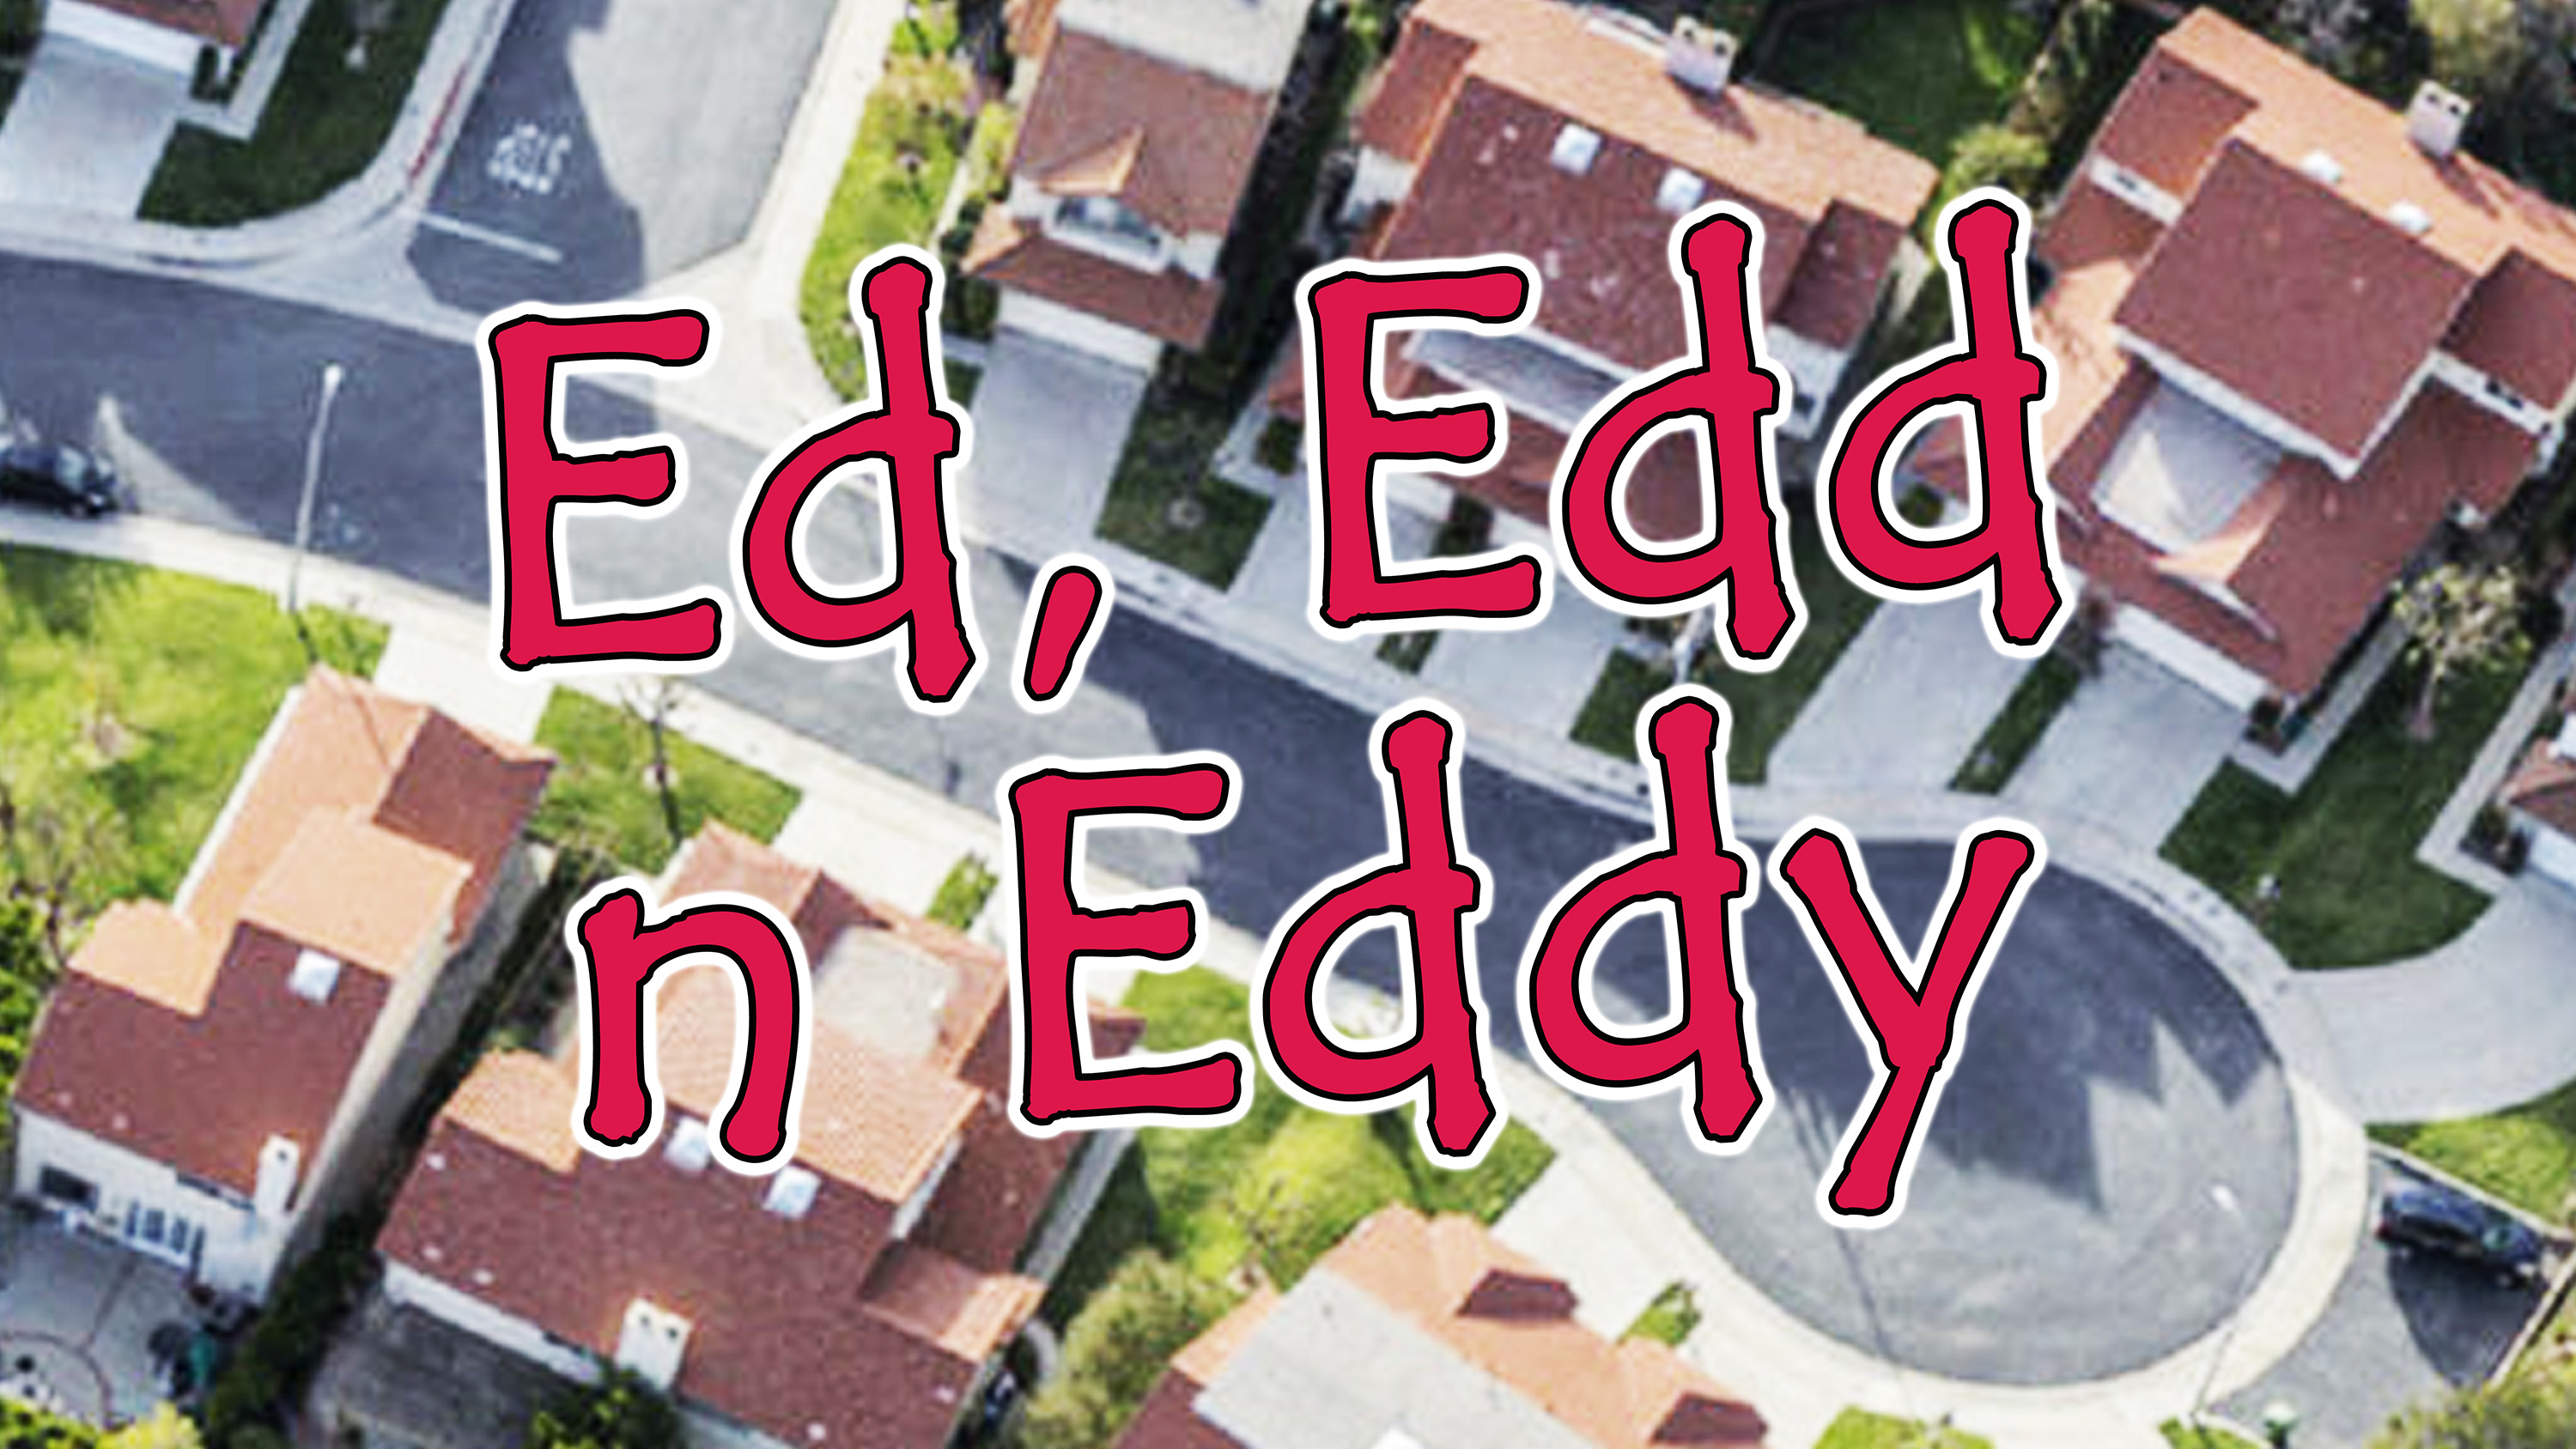 Ed, Edd, N Eddy